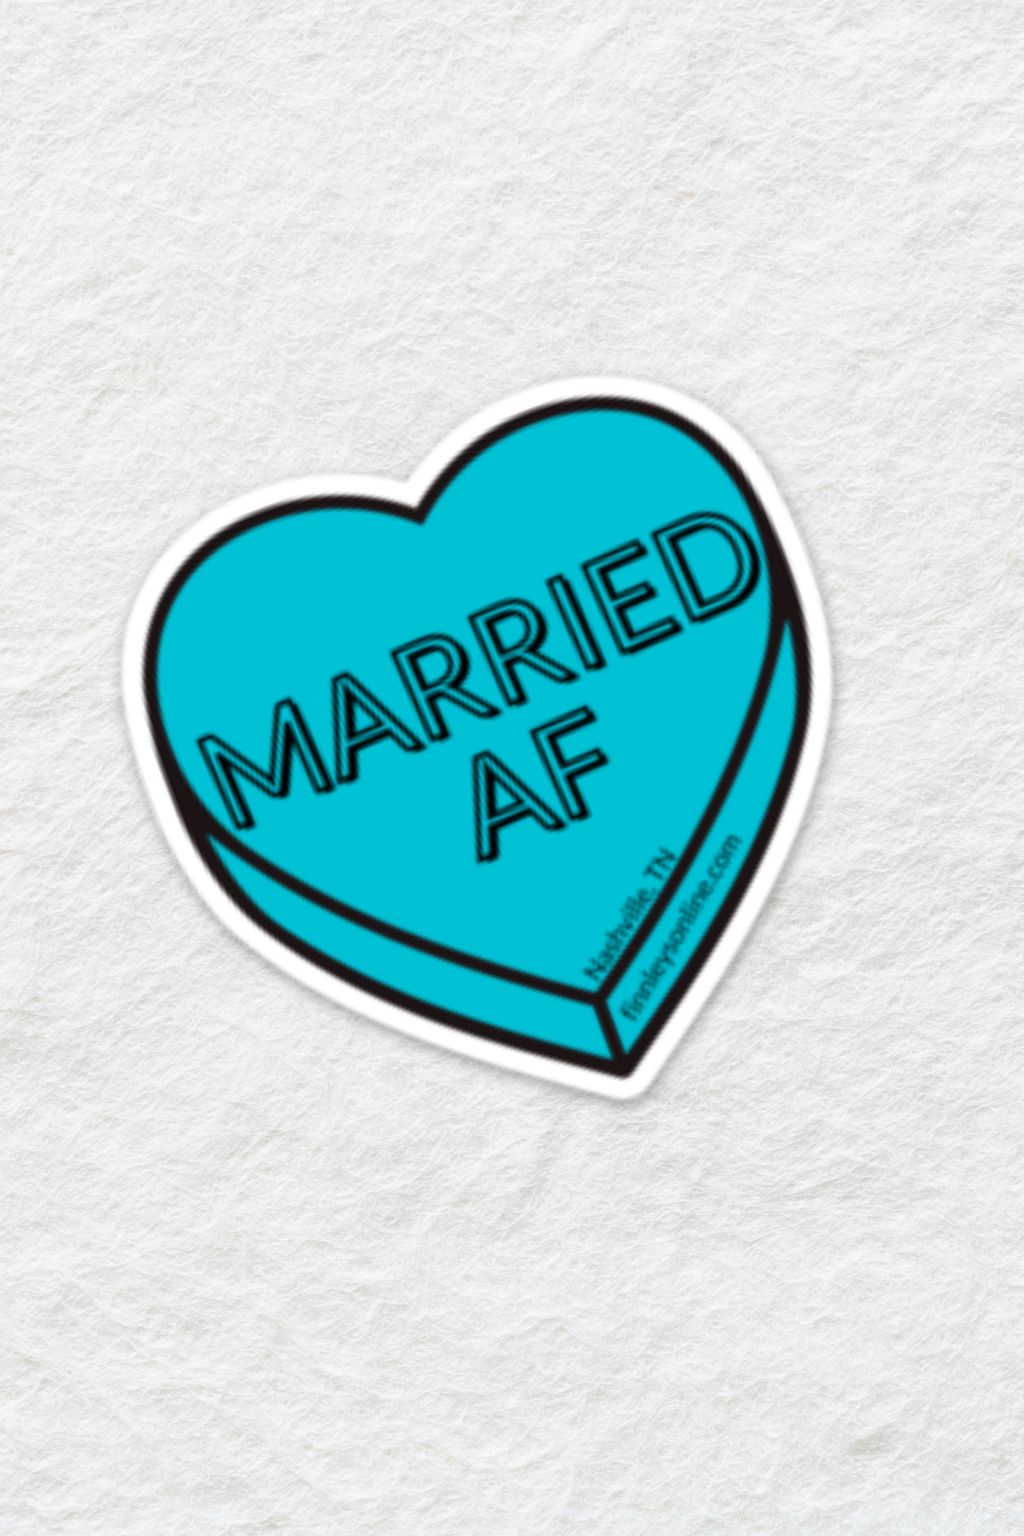 Married AF Sticker